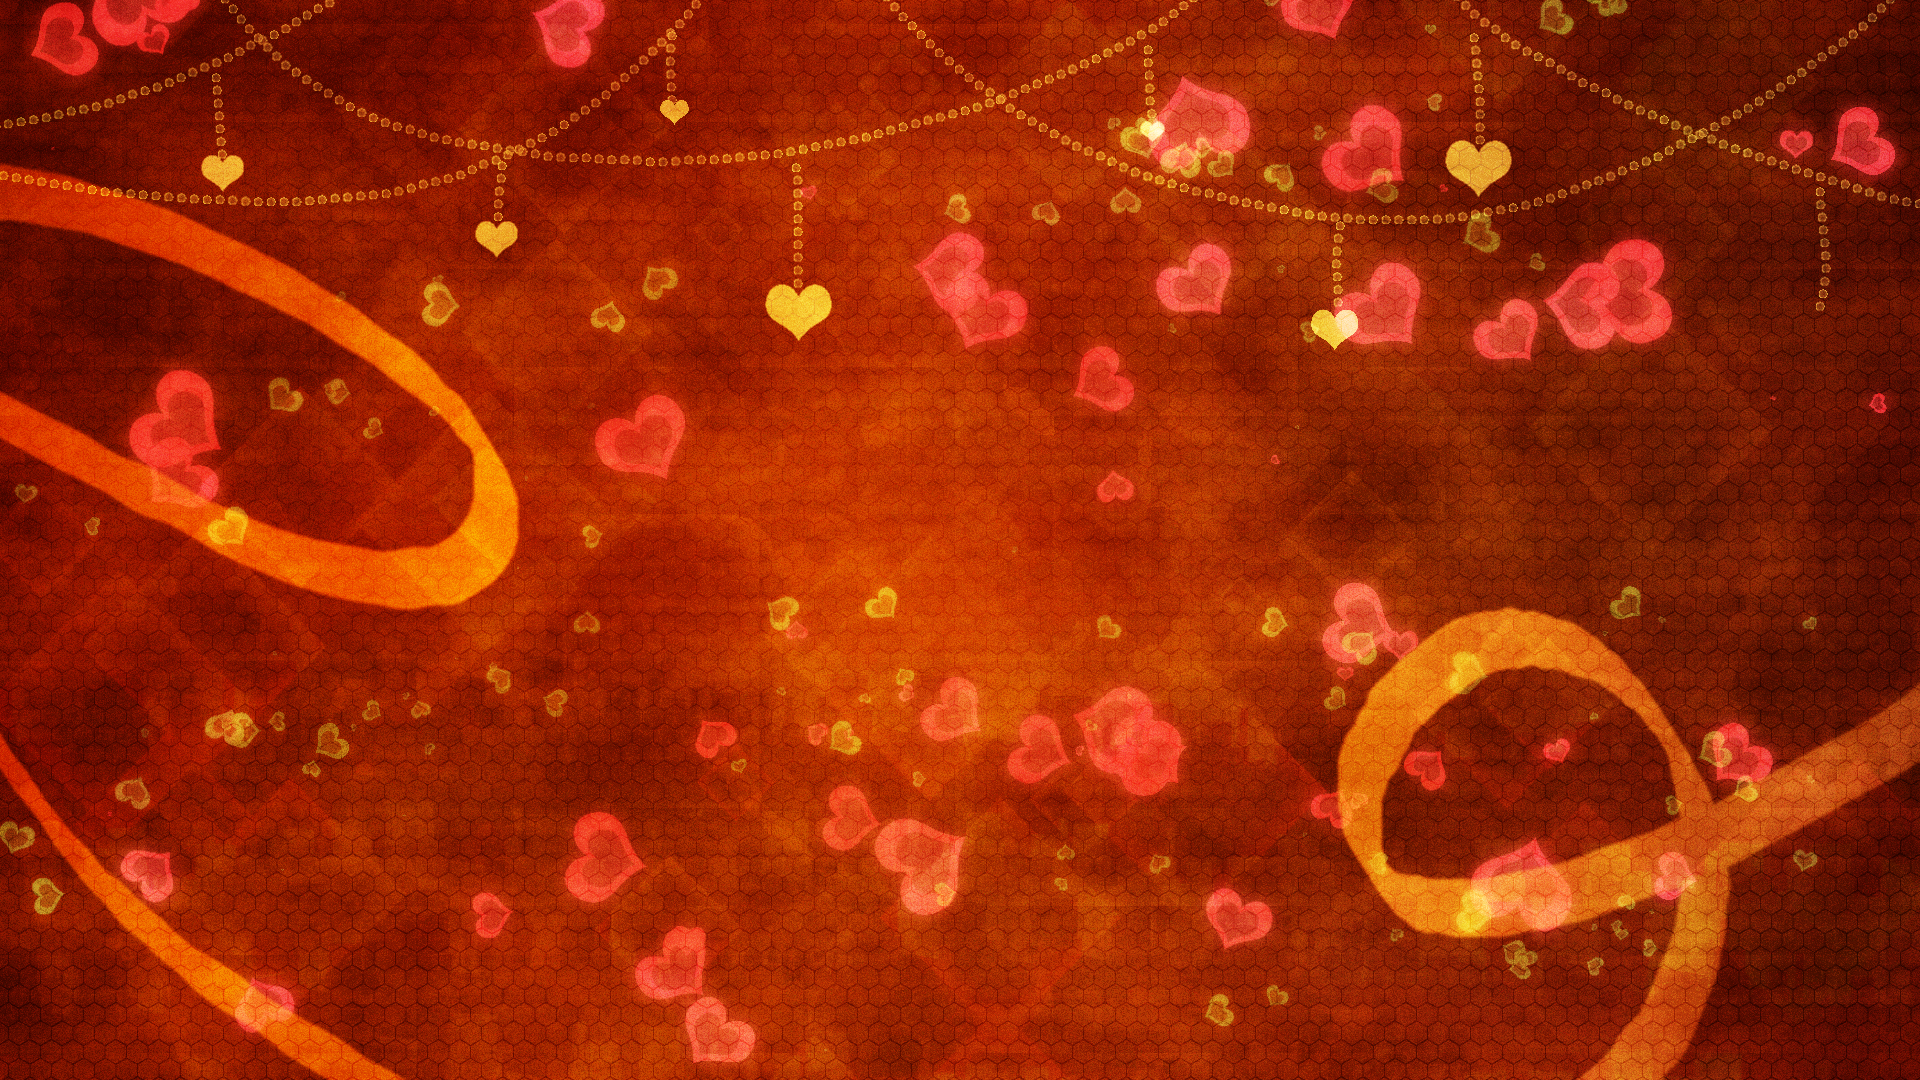 背景フリー素材 バレンタイン素材2種 梅に鶯 背景素材ブログ